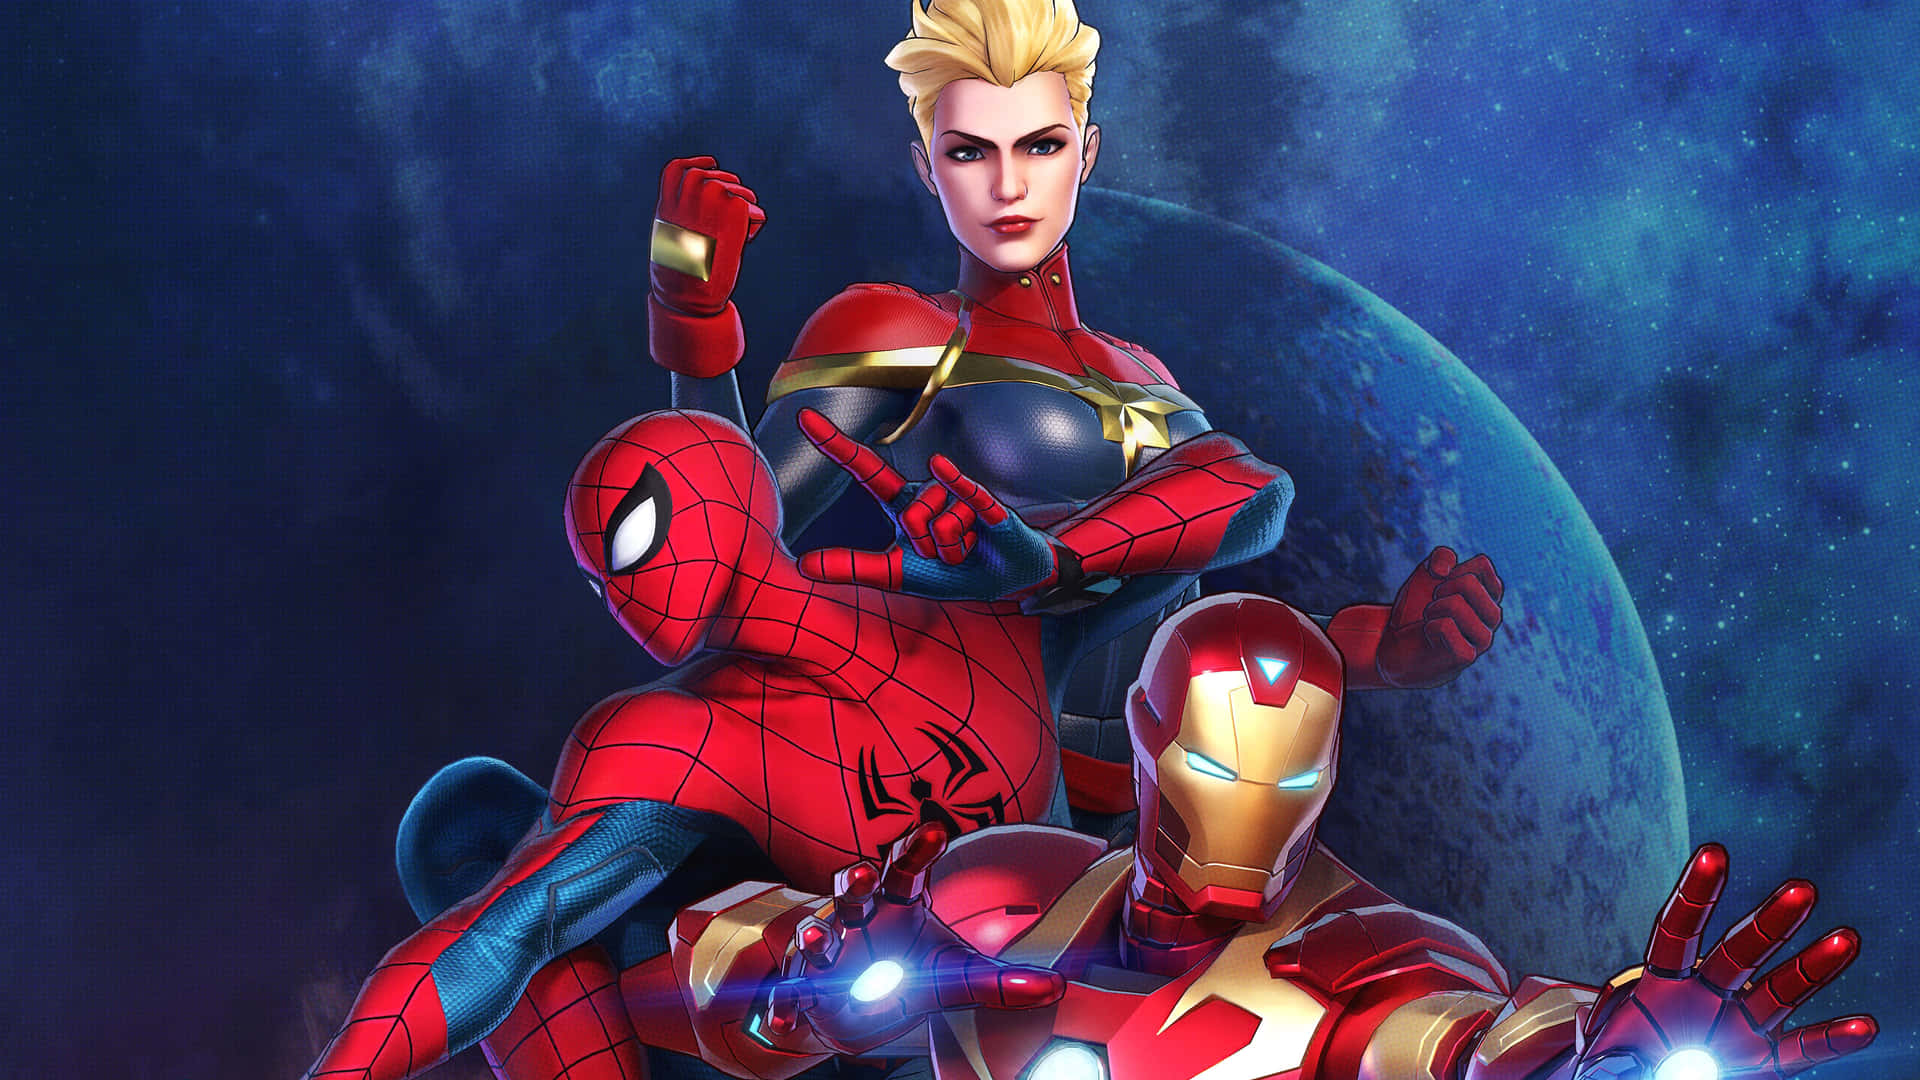 Spiderman Och Iron Man Förenas För Att Kämpa För Rättvisa. Wallpaper